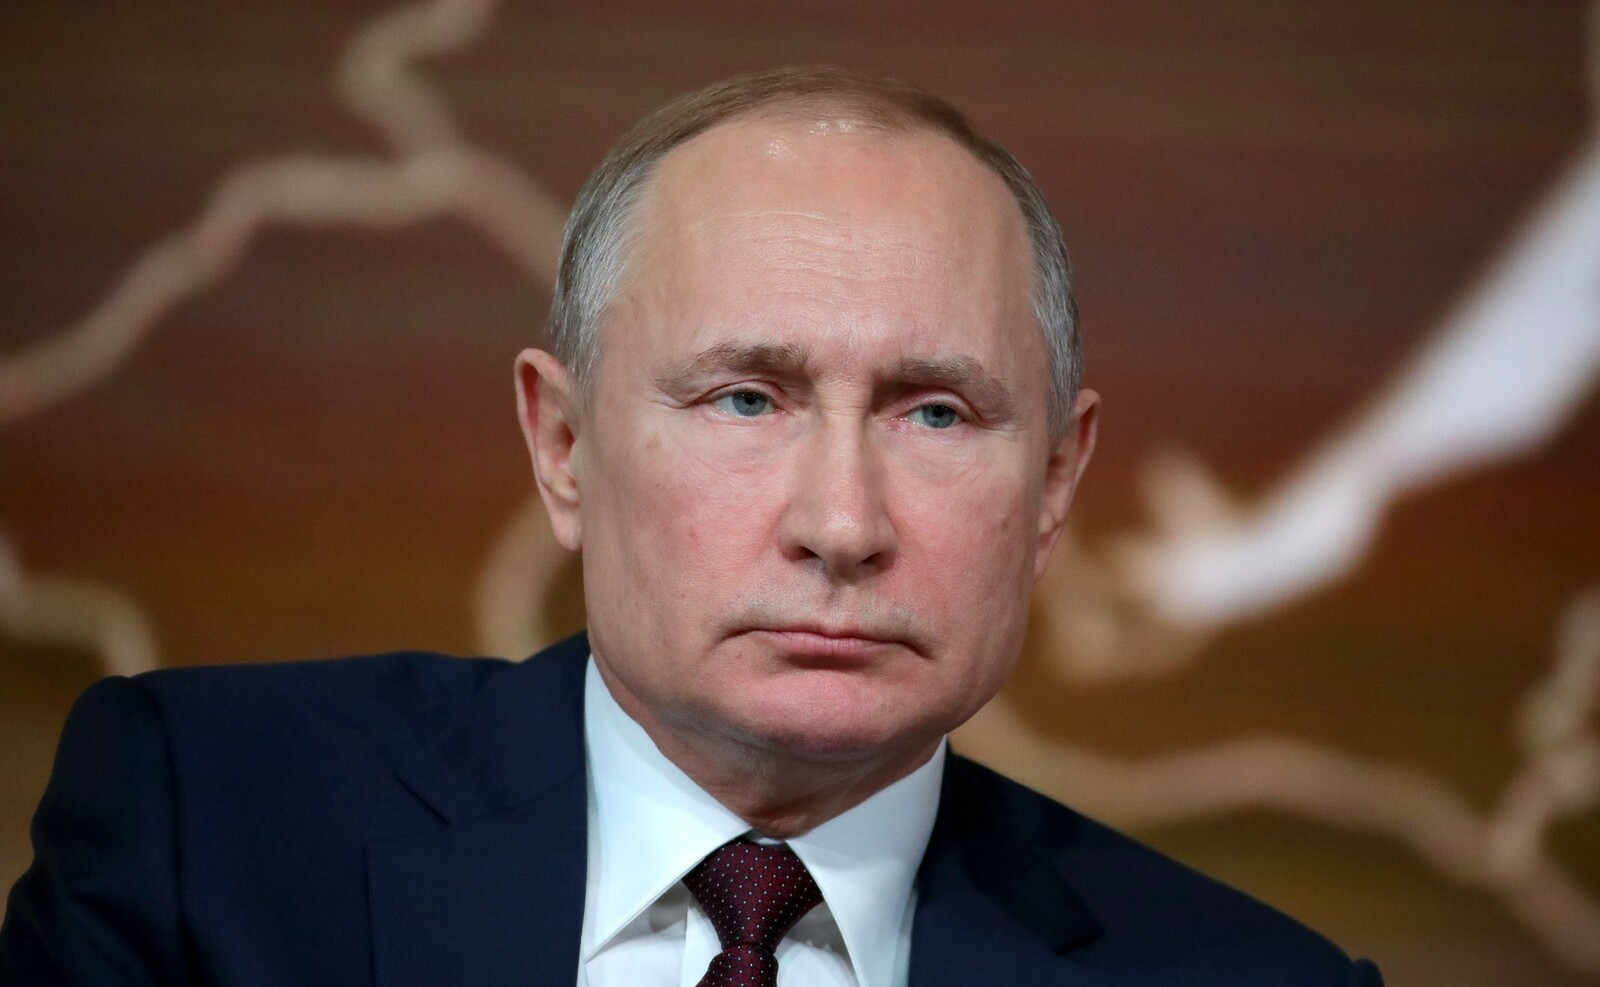 Путин подписал закон о госязыке, регулирующий употребление иностранных слов